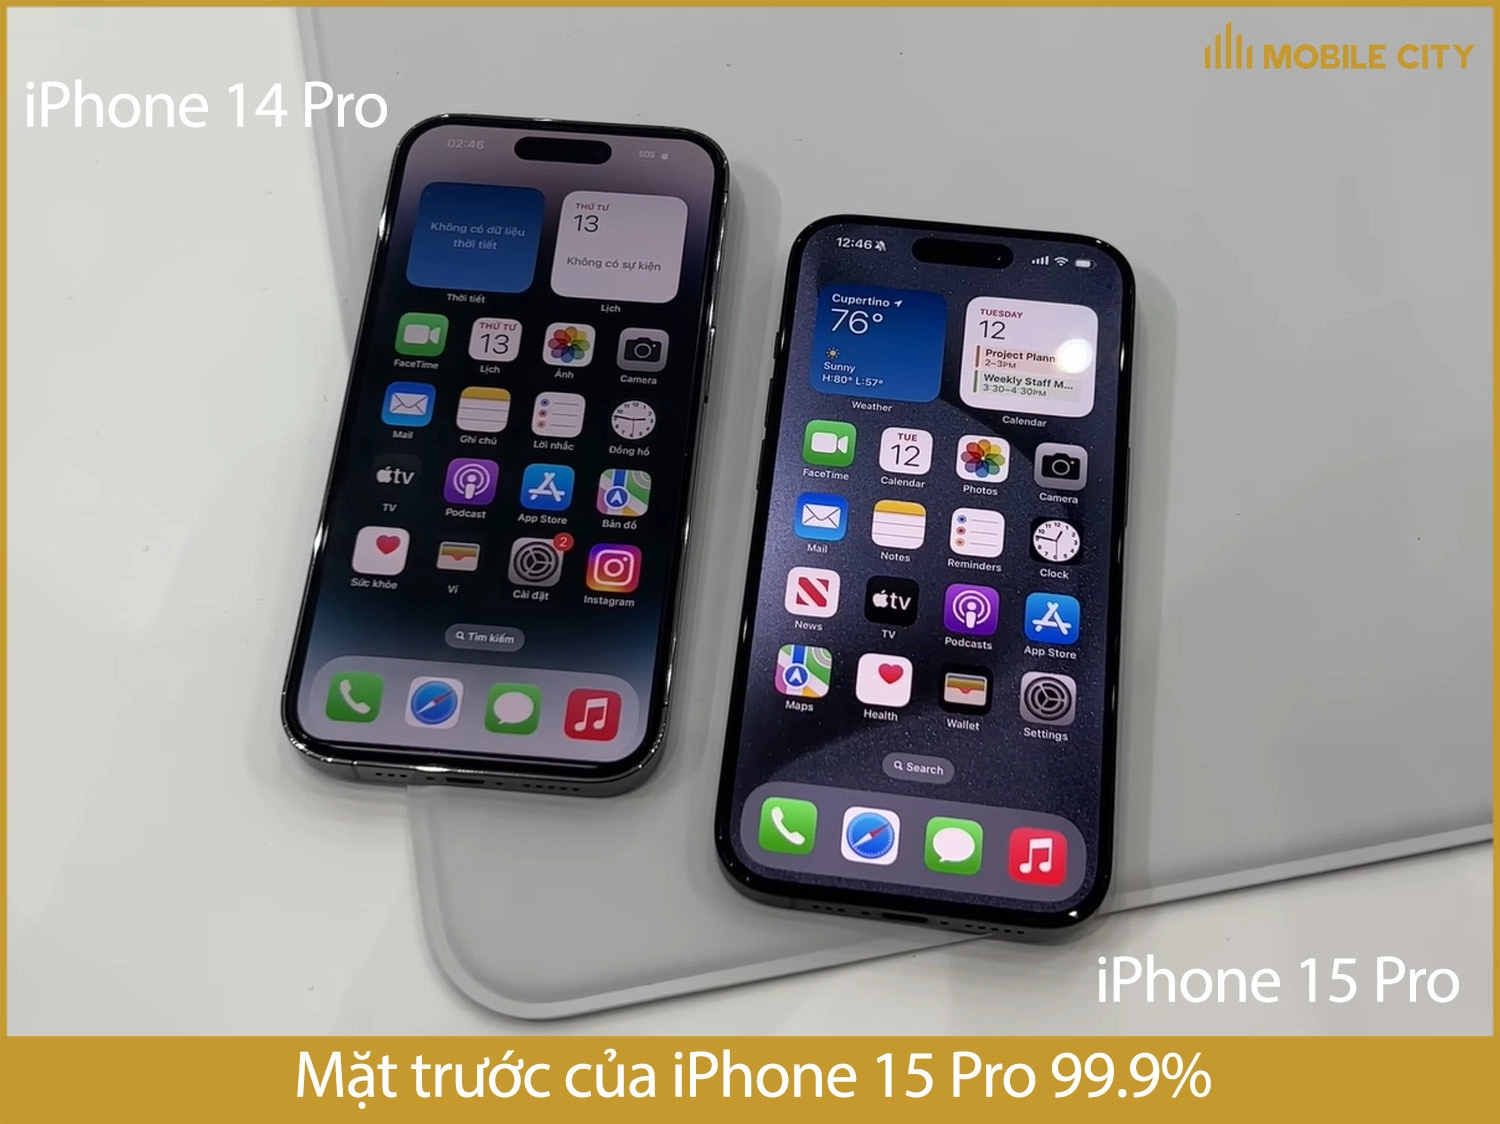 iphone-15-pro-cu-nguon-goc